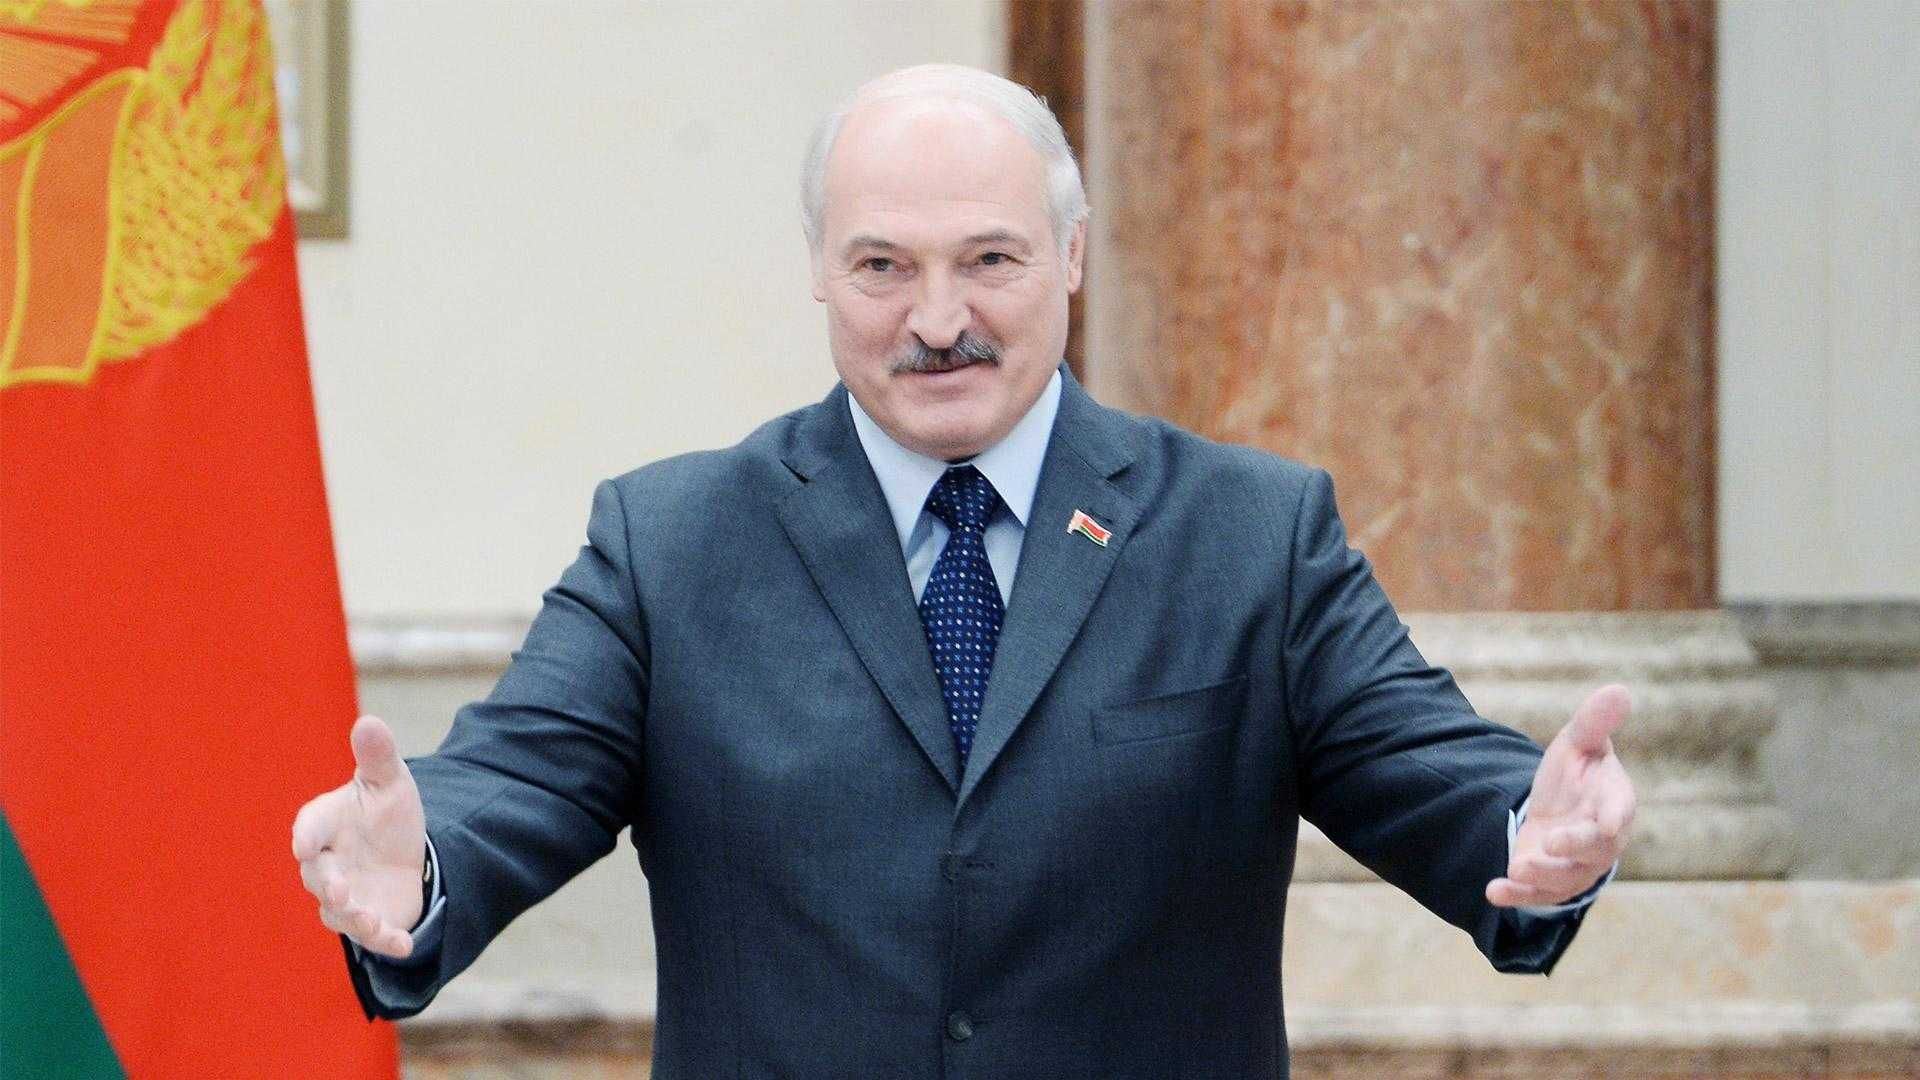 Интернет в Беларуси отключают из-за границы, – Лукашенко